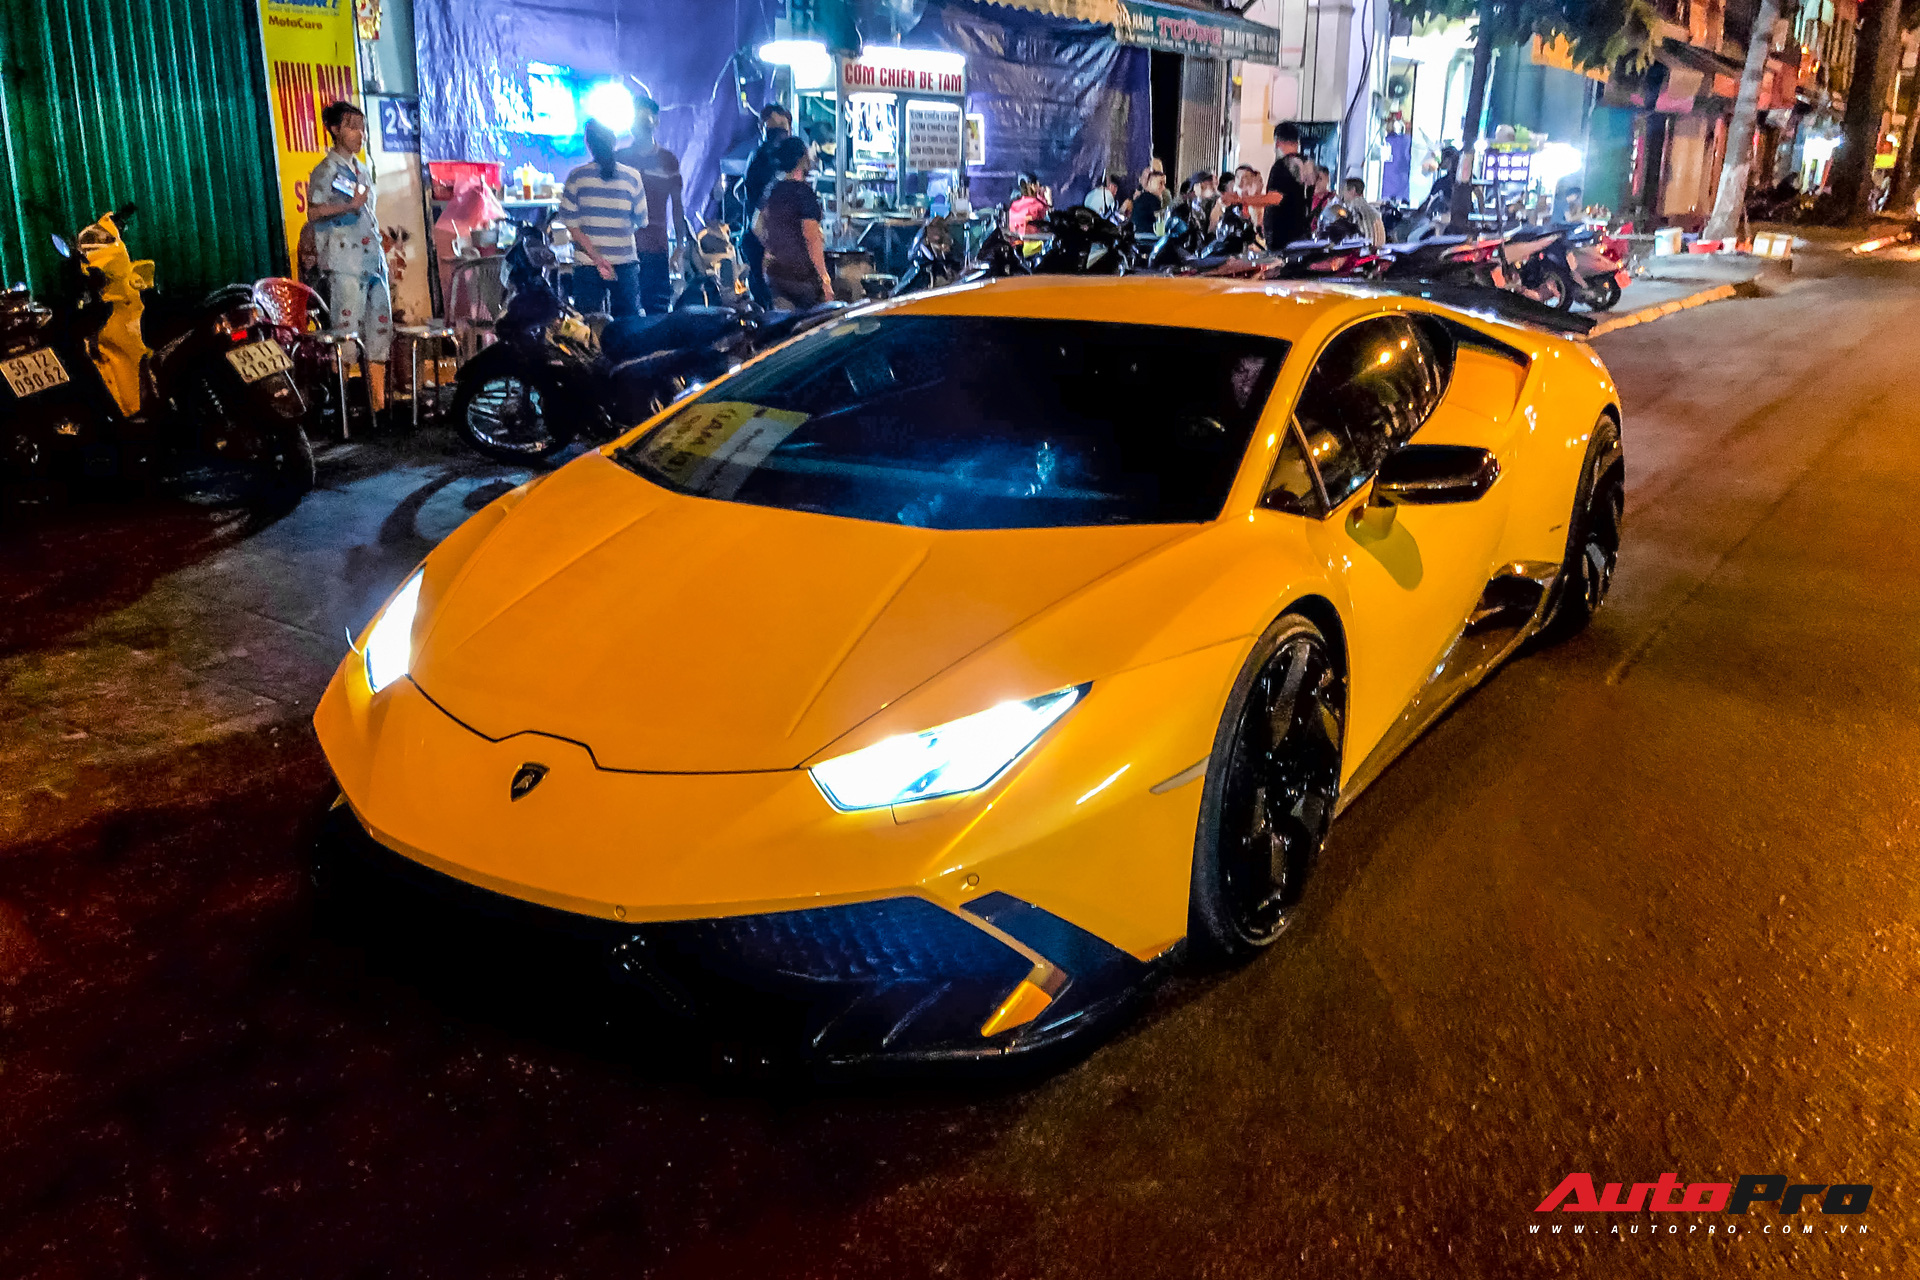 Tiếp tục đổi chủ, Lamborghini Huracan từng của doanh nhân Nguyễn Quốc Cường trở về màu sơn nguyên bản